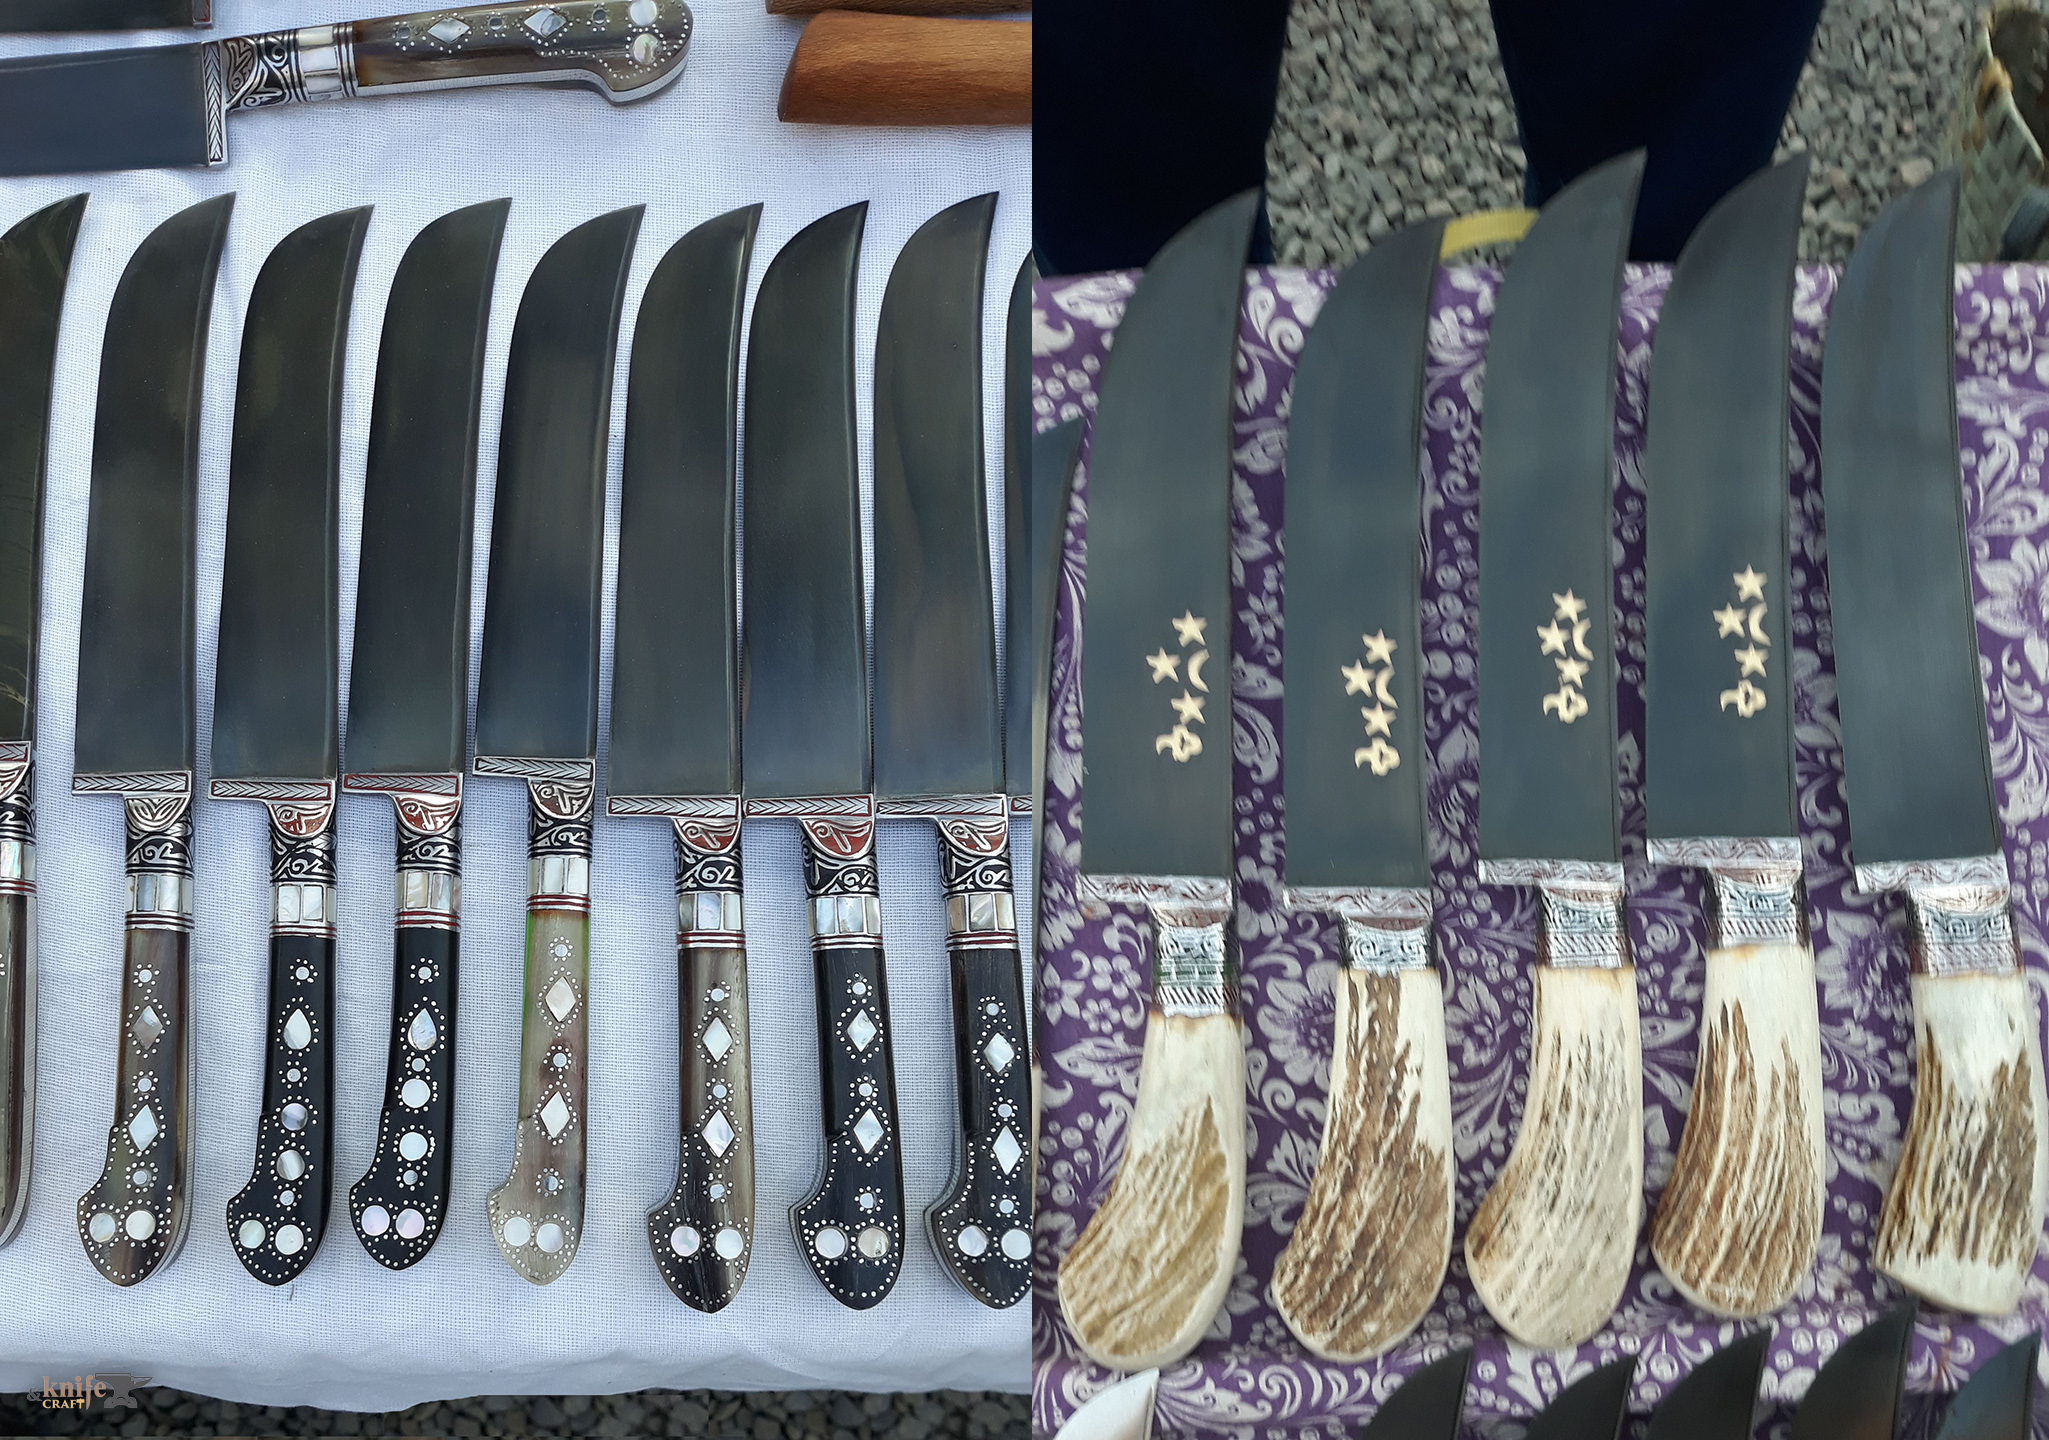 недорогой хороший узбекский национальный кухонный нож пчак купить (заказать) в Ташкенте интернет